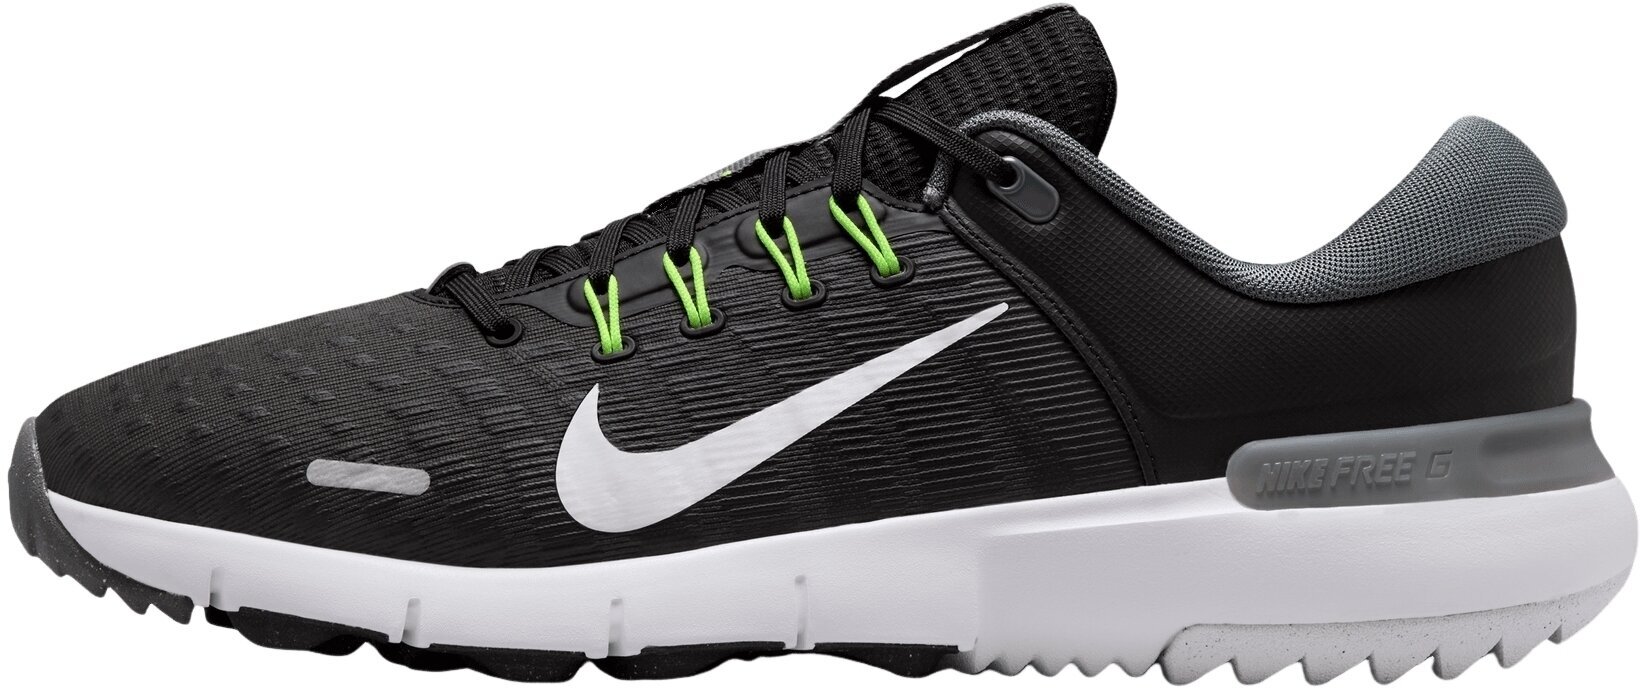 Calzado de golf para hombres Nike Free Golf Unisex Shoes Black/White/Iron Grey/Volt 44